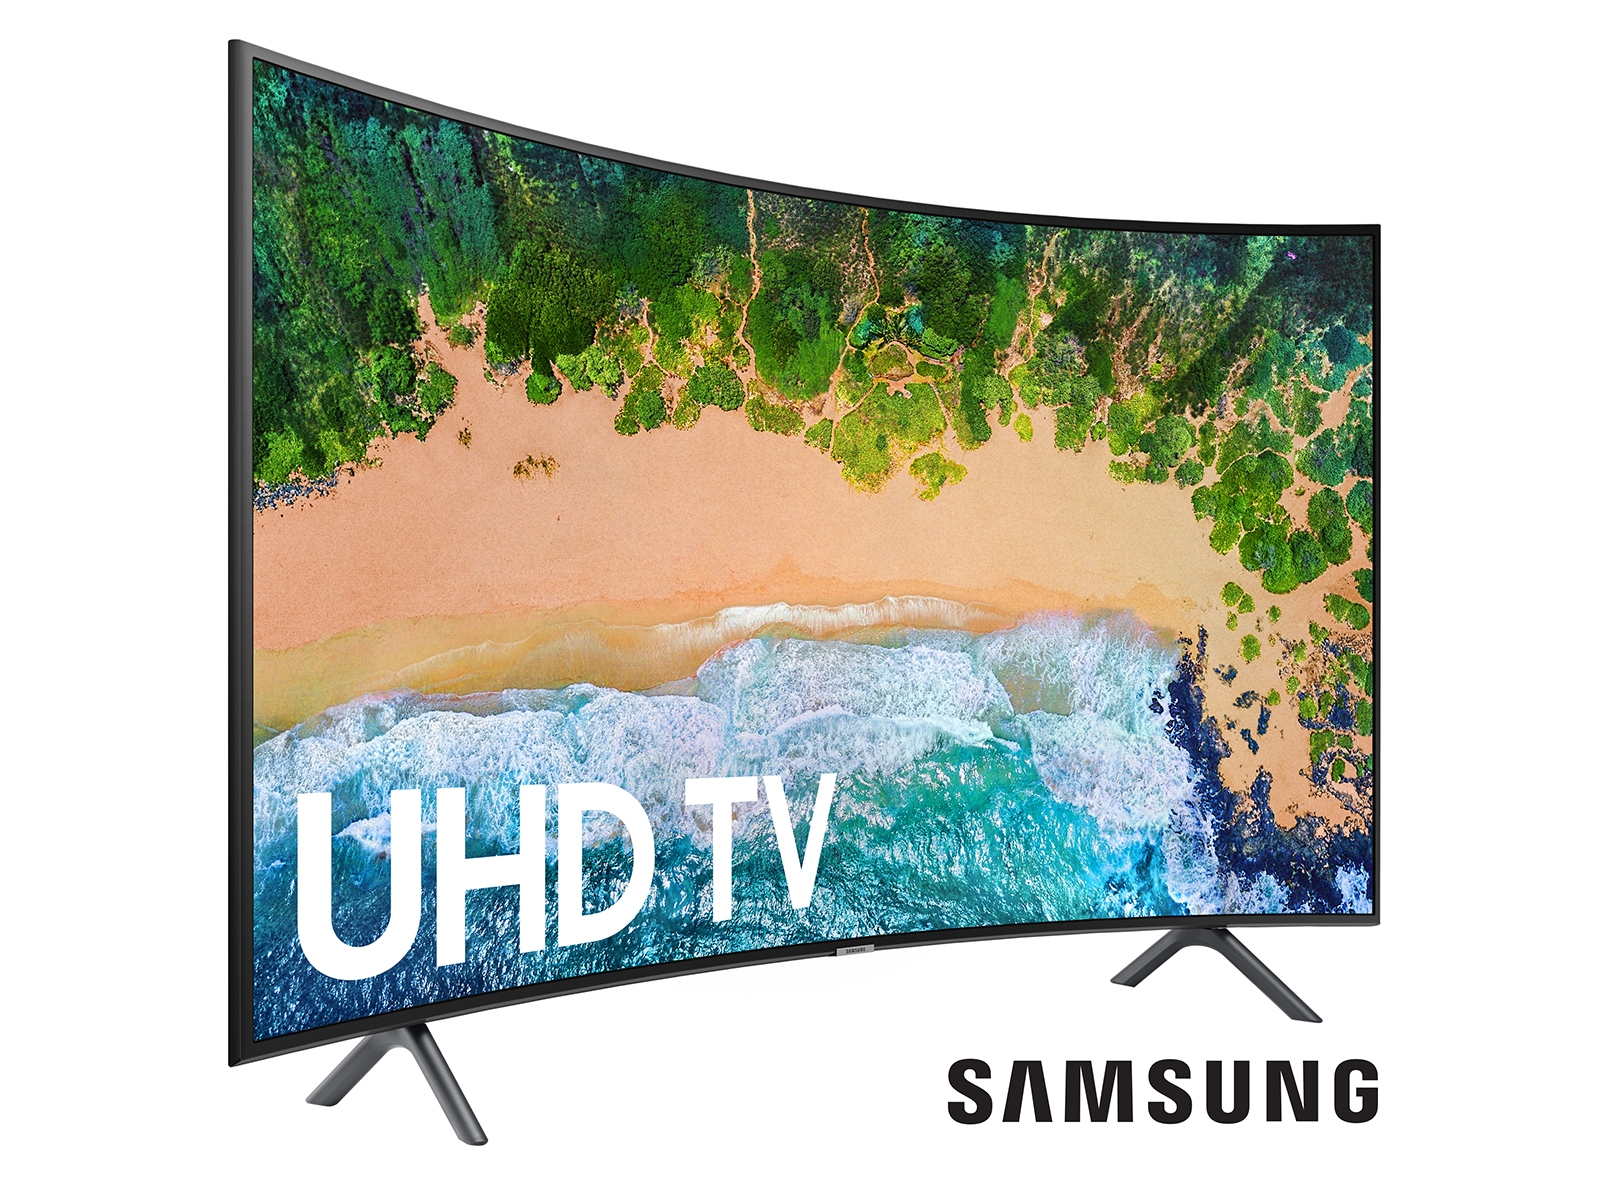 2018 UHD Smart TV (NU7300) | Owner Information & Support | Samsung US1600 x 1200